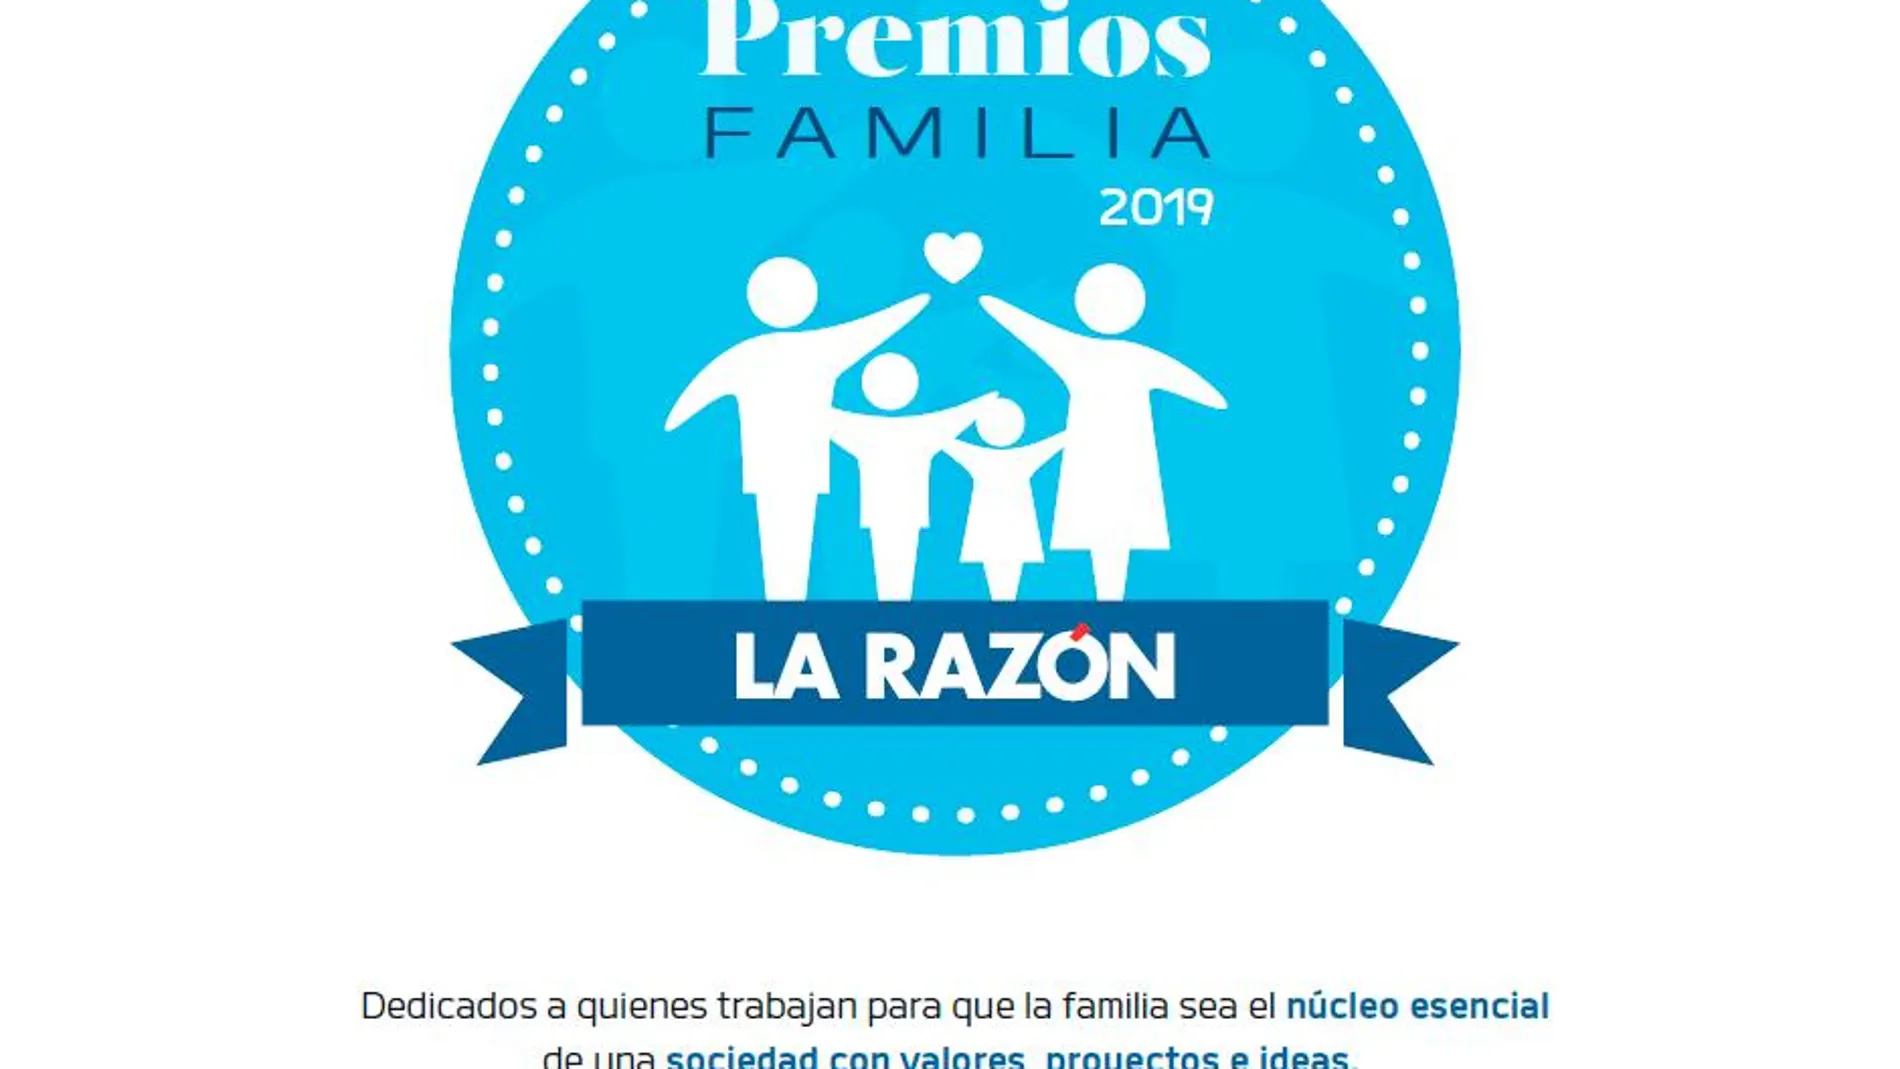 Premios Familia LA RAZON